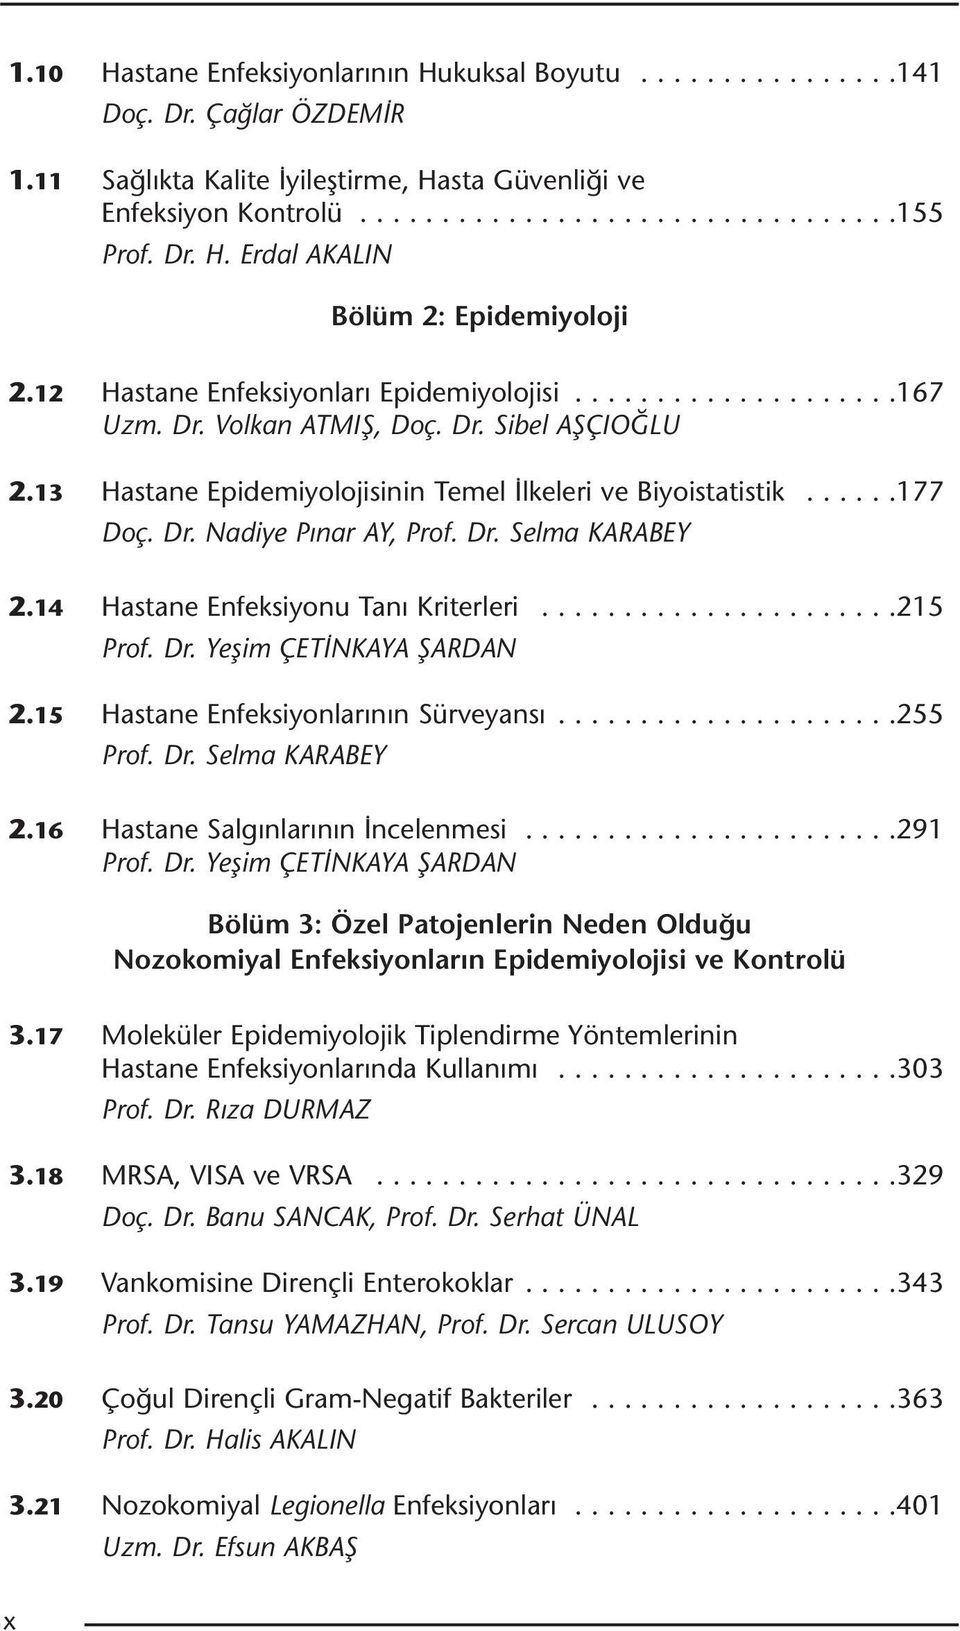 13 Hastane Epidemiyolojisinin Temel İlkeleri ve Biyoistatistik......177 Doç. Dr. Nadiye Pınar AY, Prof. Dr. Selma KARABEY 2.14 Hastane Enfeksiyonu Tanı Kriterleri......................215 Prof. Dr. Yeşim ÇETİNKAYA ŞARDAN 2.